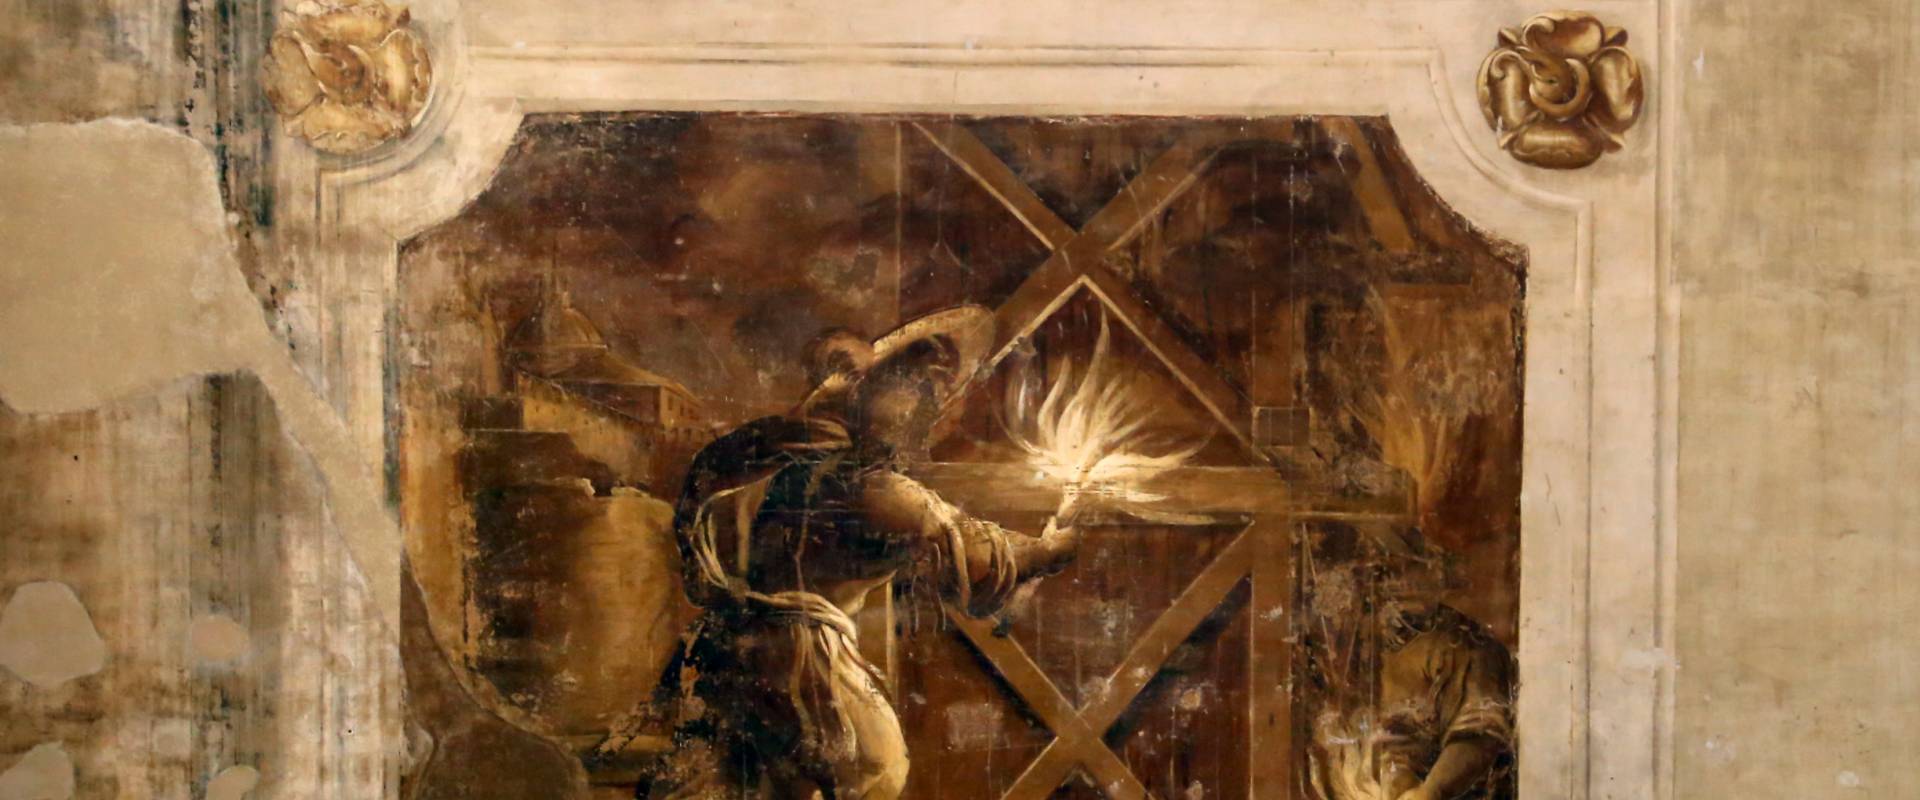 Pier francesco battistelli e aiuti, affreschi con scene dell'orlando furioso e della gerusalemme l. tra telamoni, 1619-28, 17 foto di Sailko